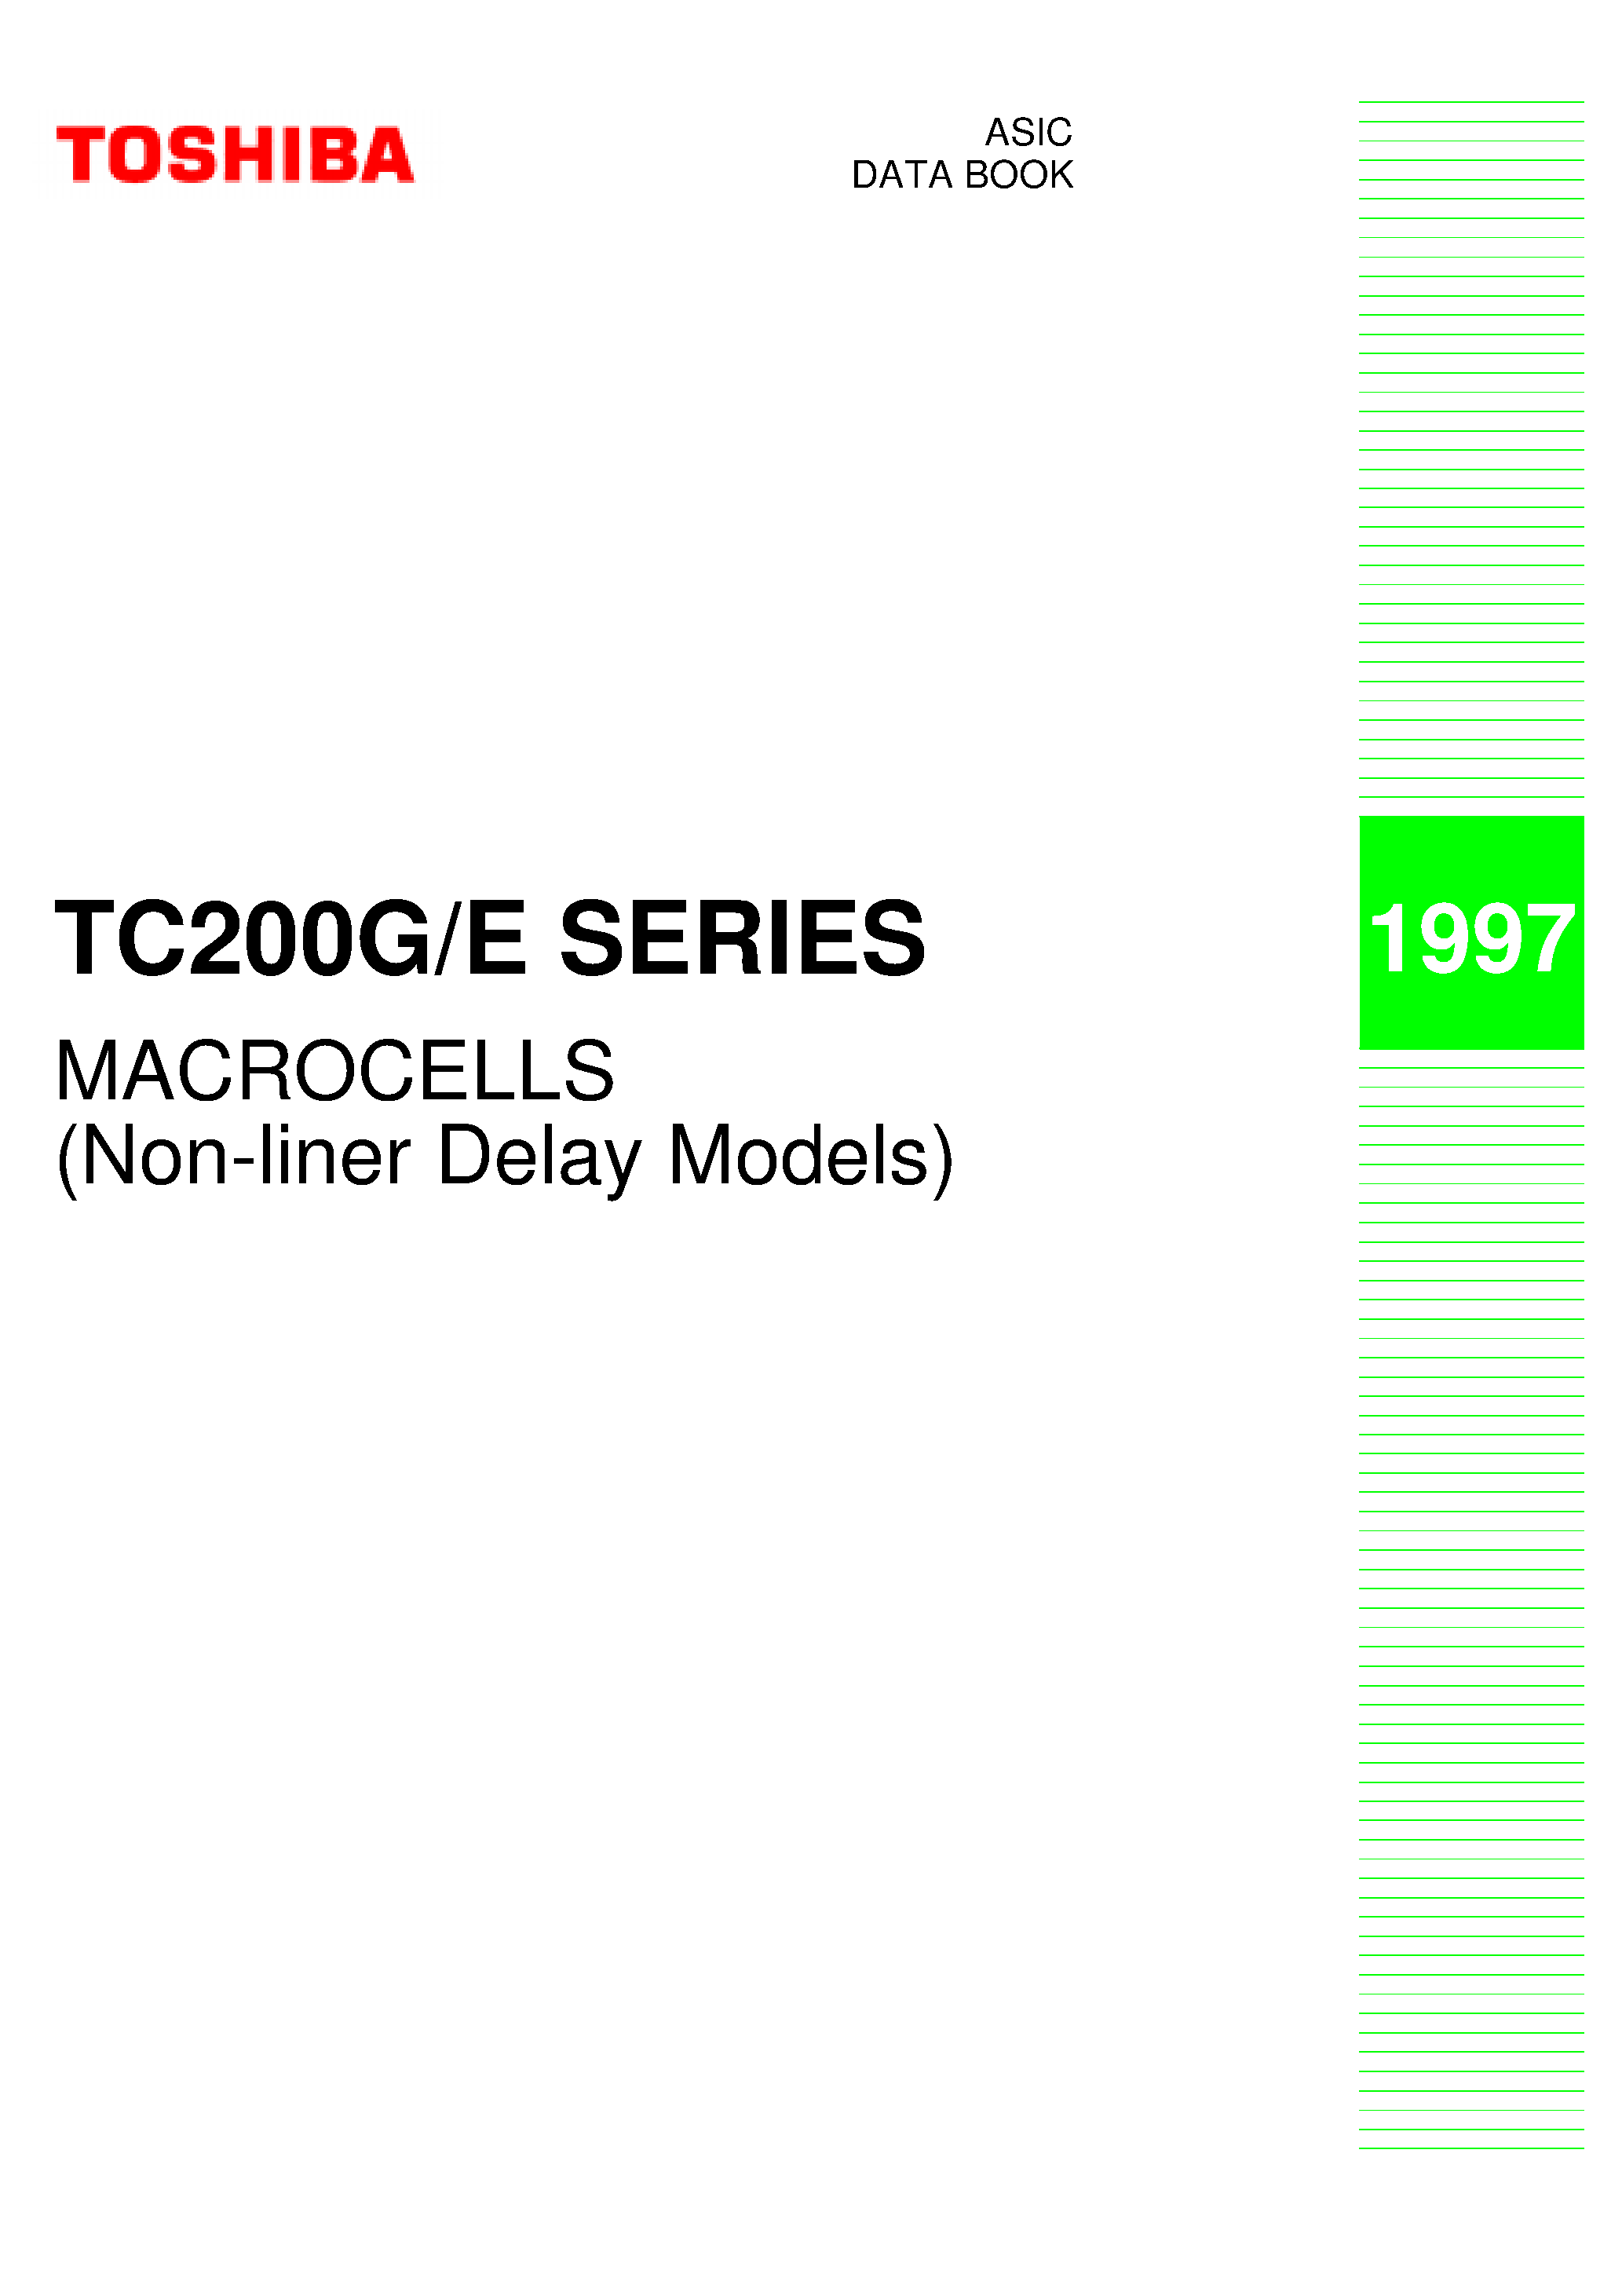 Даташит TC200E - (TC200G/E Series) Macrocells страница 1